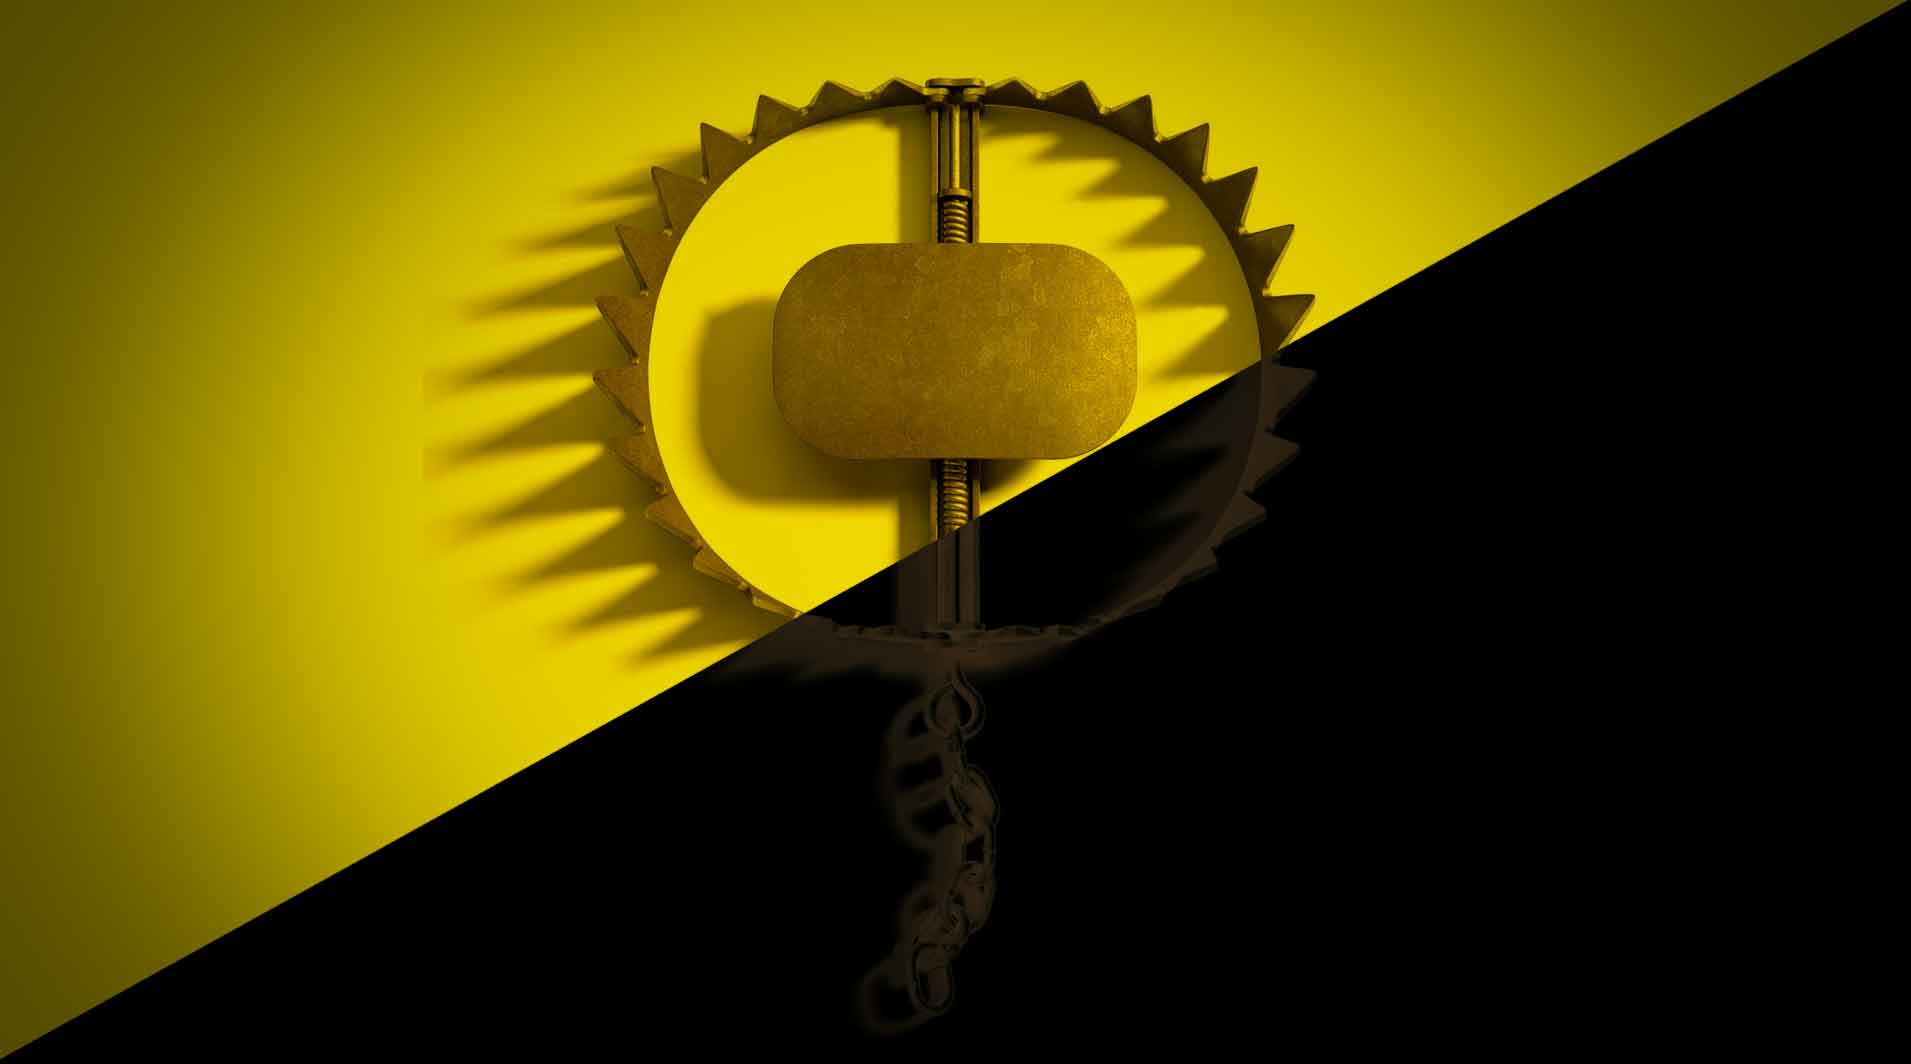 Una grande trampa de metal para atrapar animales encima de una bandera dividida diagonalmente en amarillo y negro que es el símbolo de anarcocapitalismo.